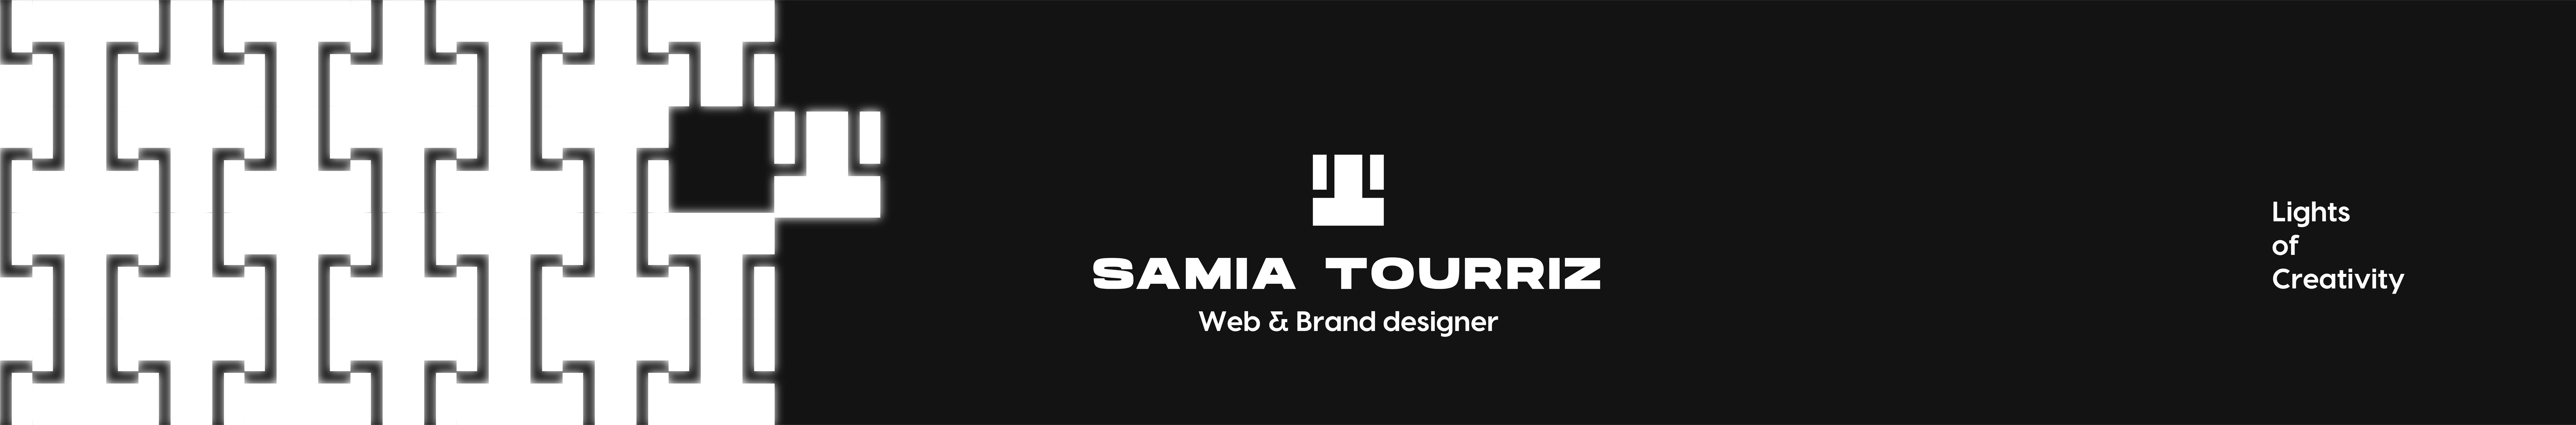 SAMIA TOURRIZ's profile banner